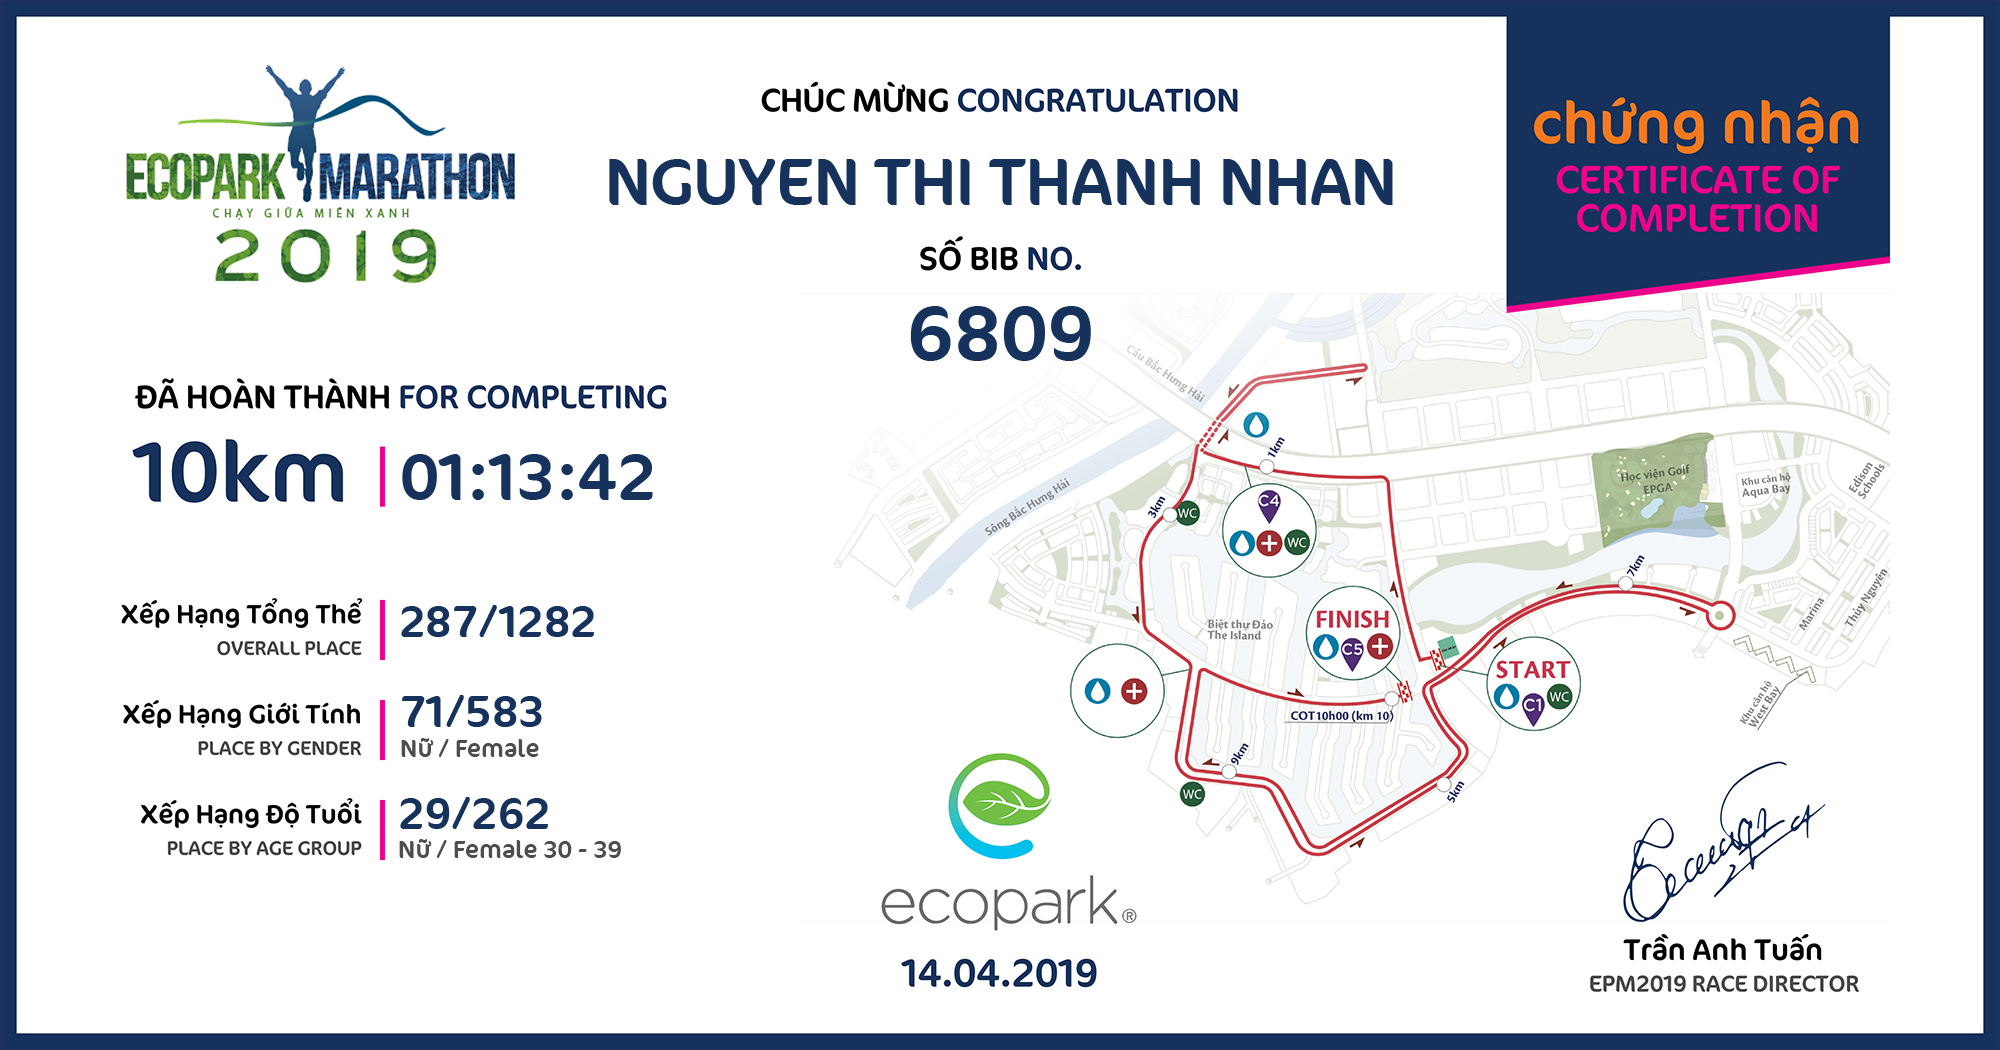 6809 - Nguyen thi thanh nhan